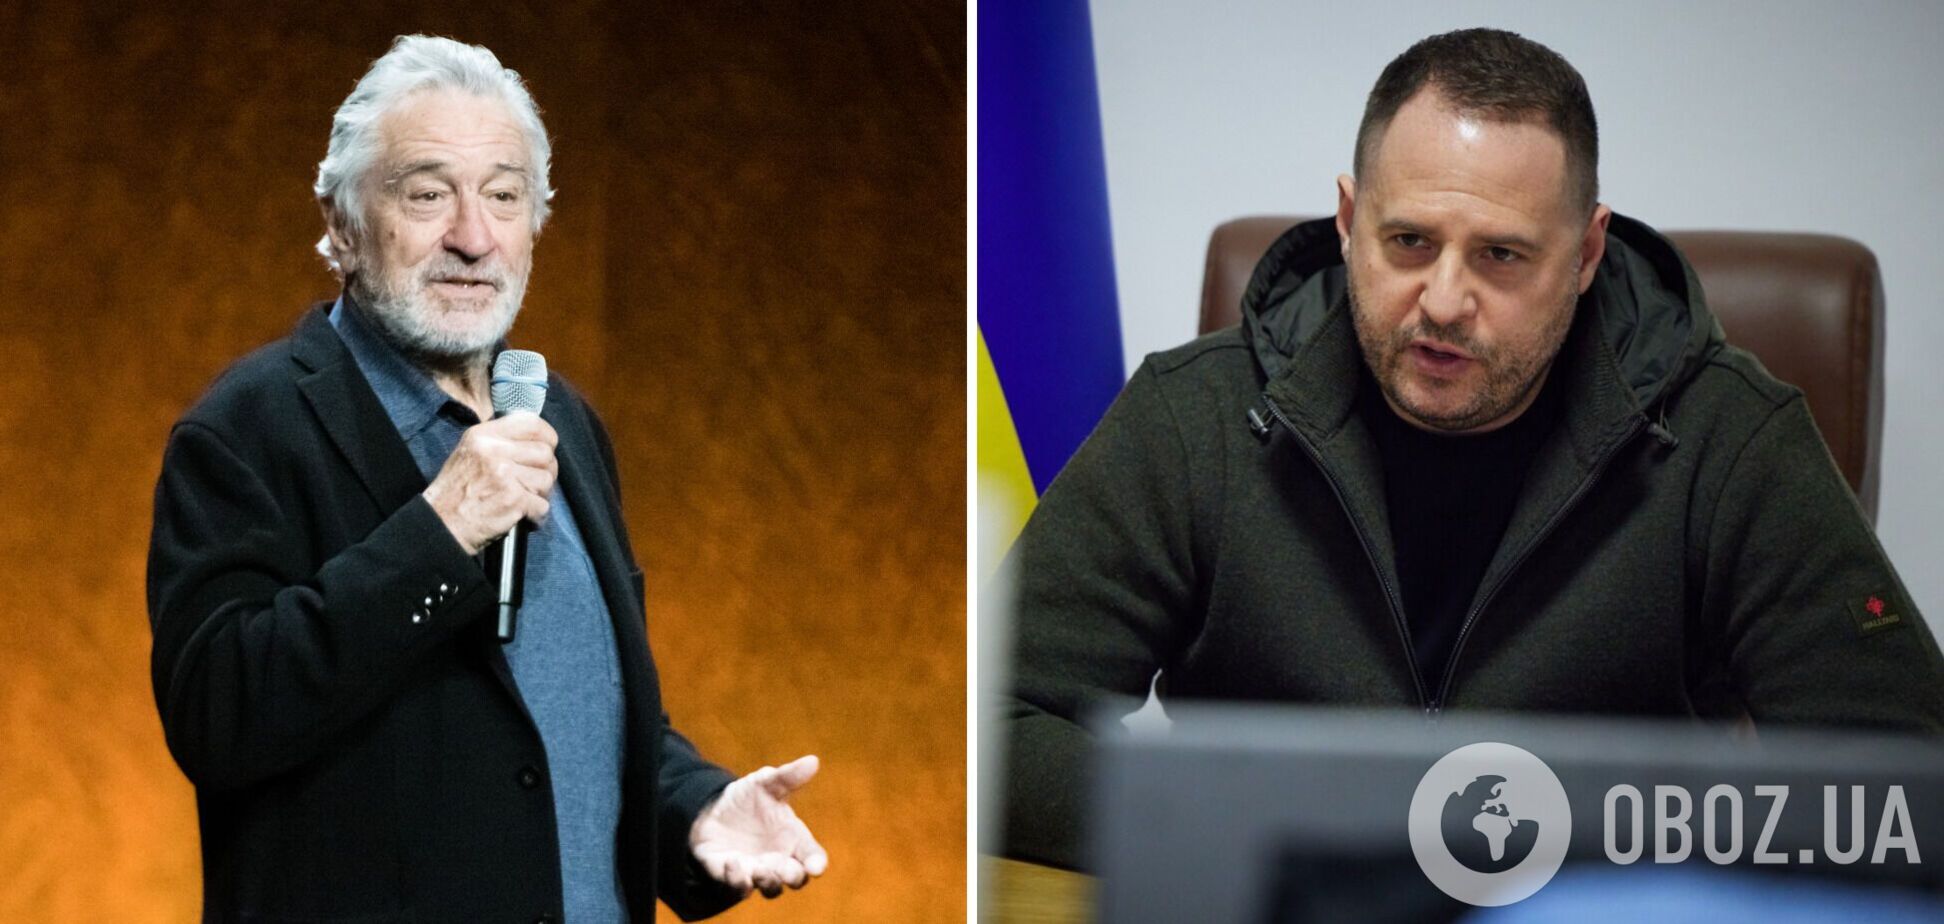 Роберт Де Ниро приедет в Украину? Андрей Ермак лично пригласил звезду в гости